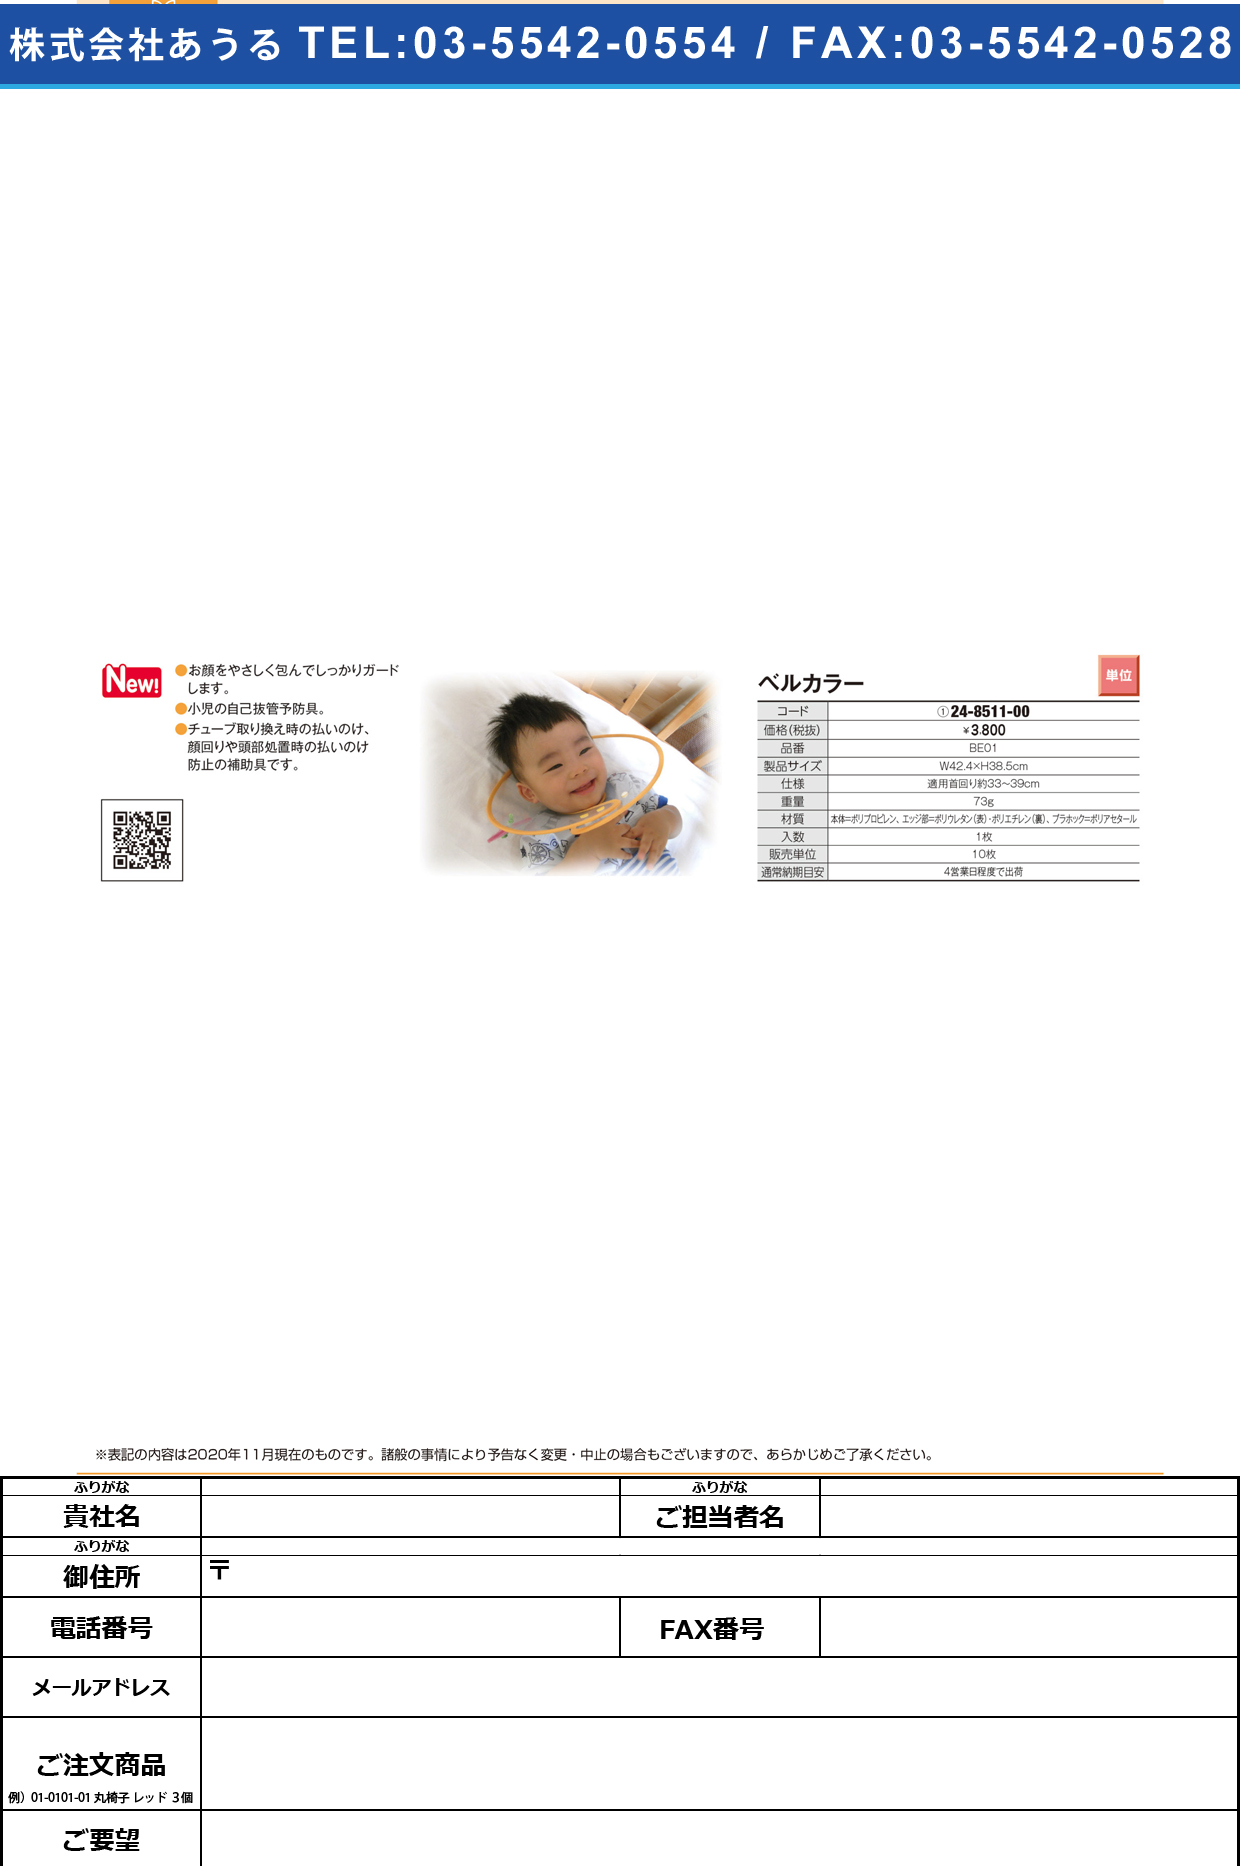 ベルカラー(小児用自己抜管予防具) BE01BE01(24-8511-00)【東京メニックス】(販売単位:10)